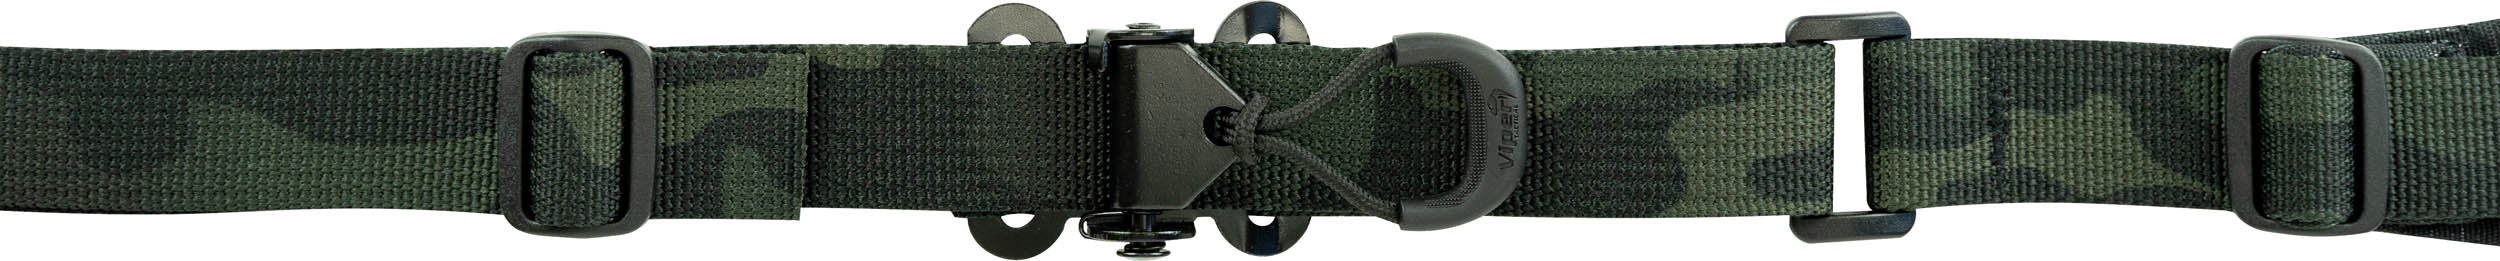 Viper Tactical Multicam Black VCAM 2-Point Sling